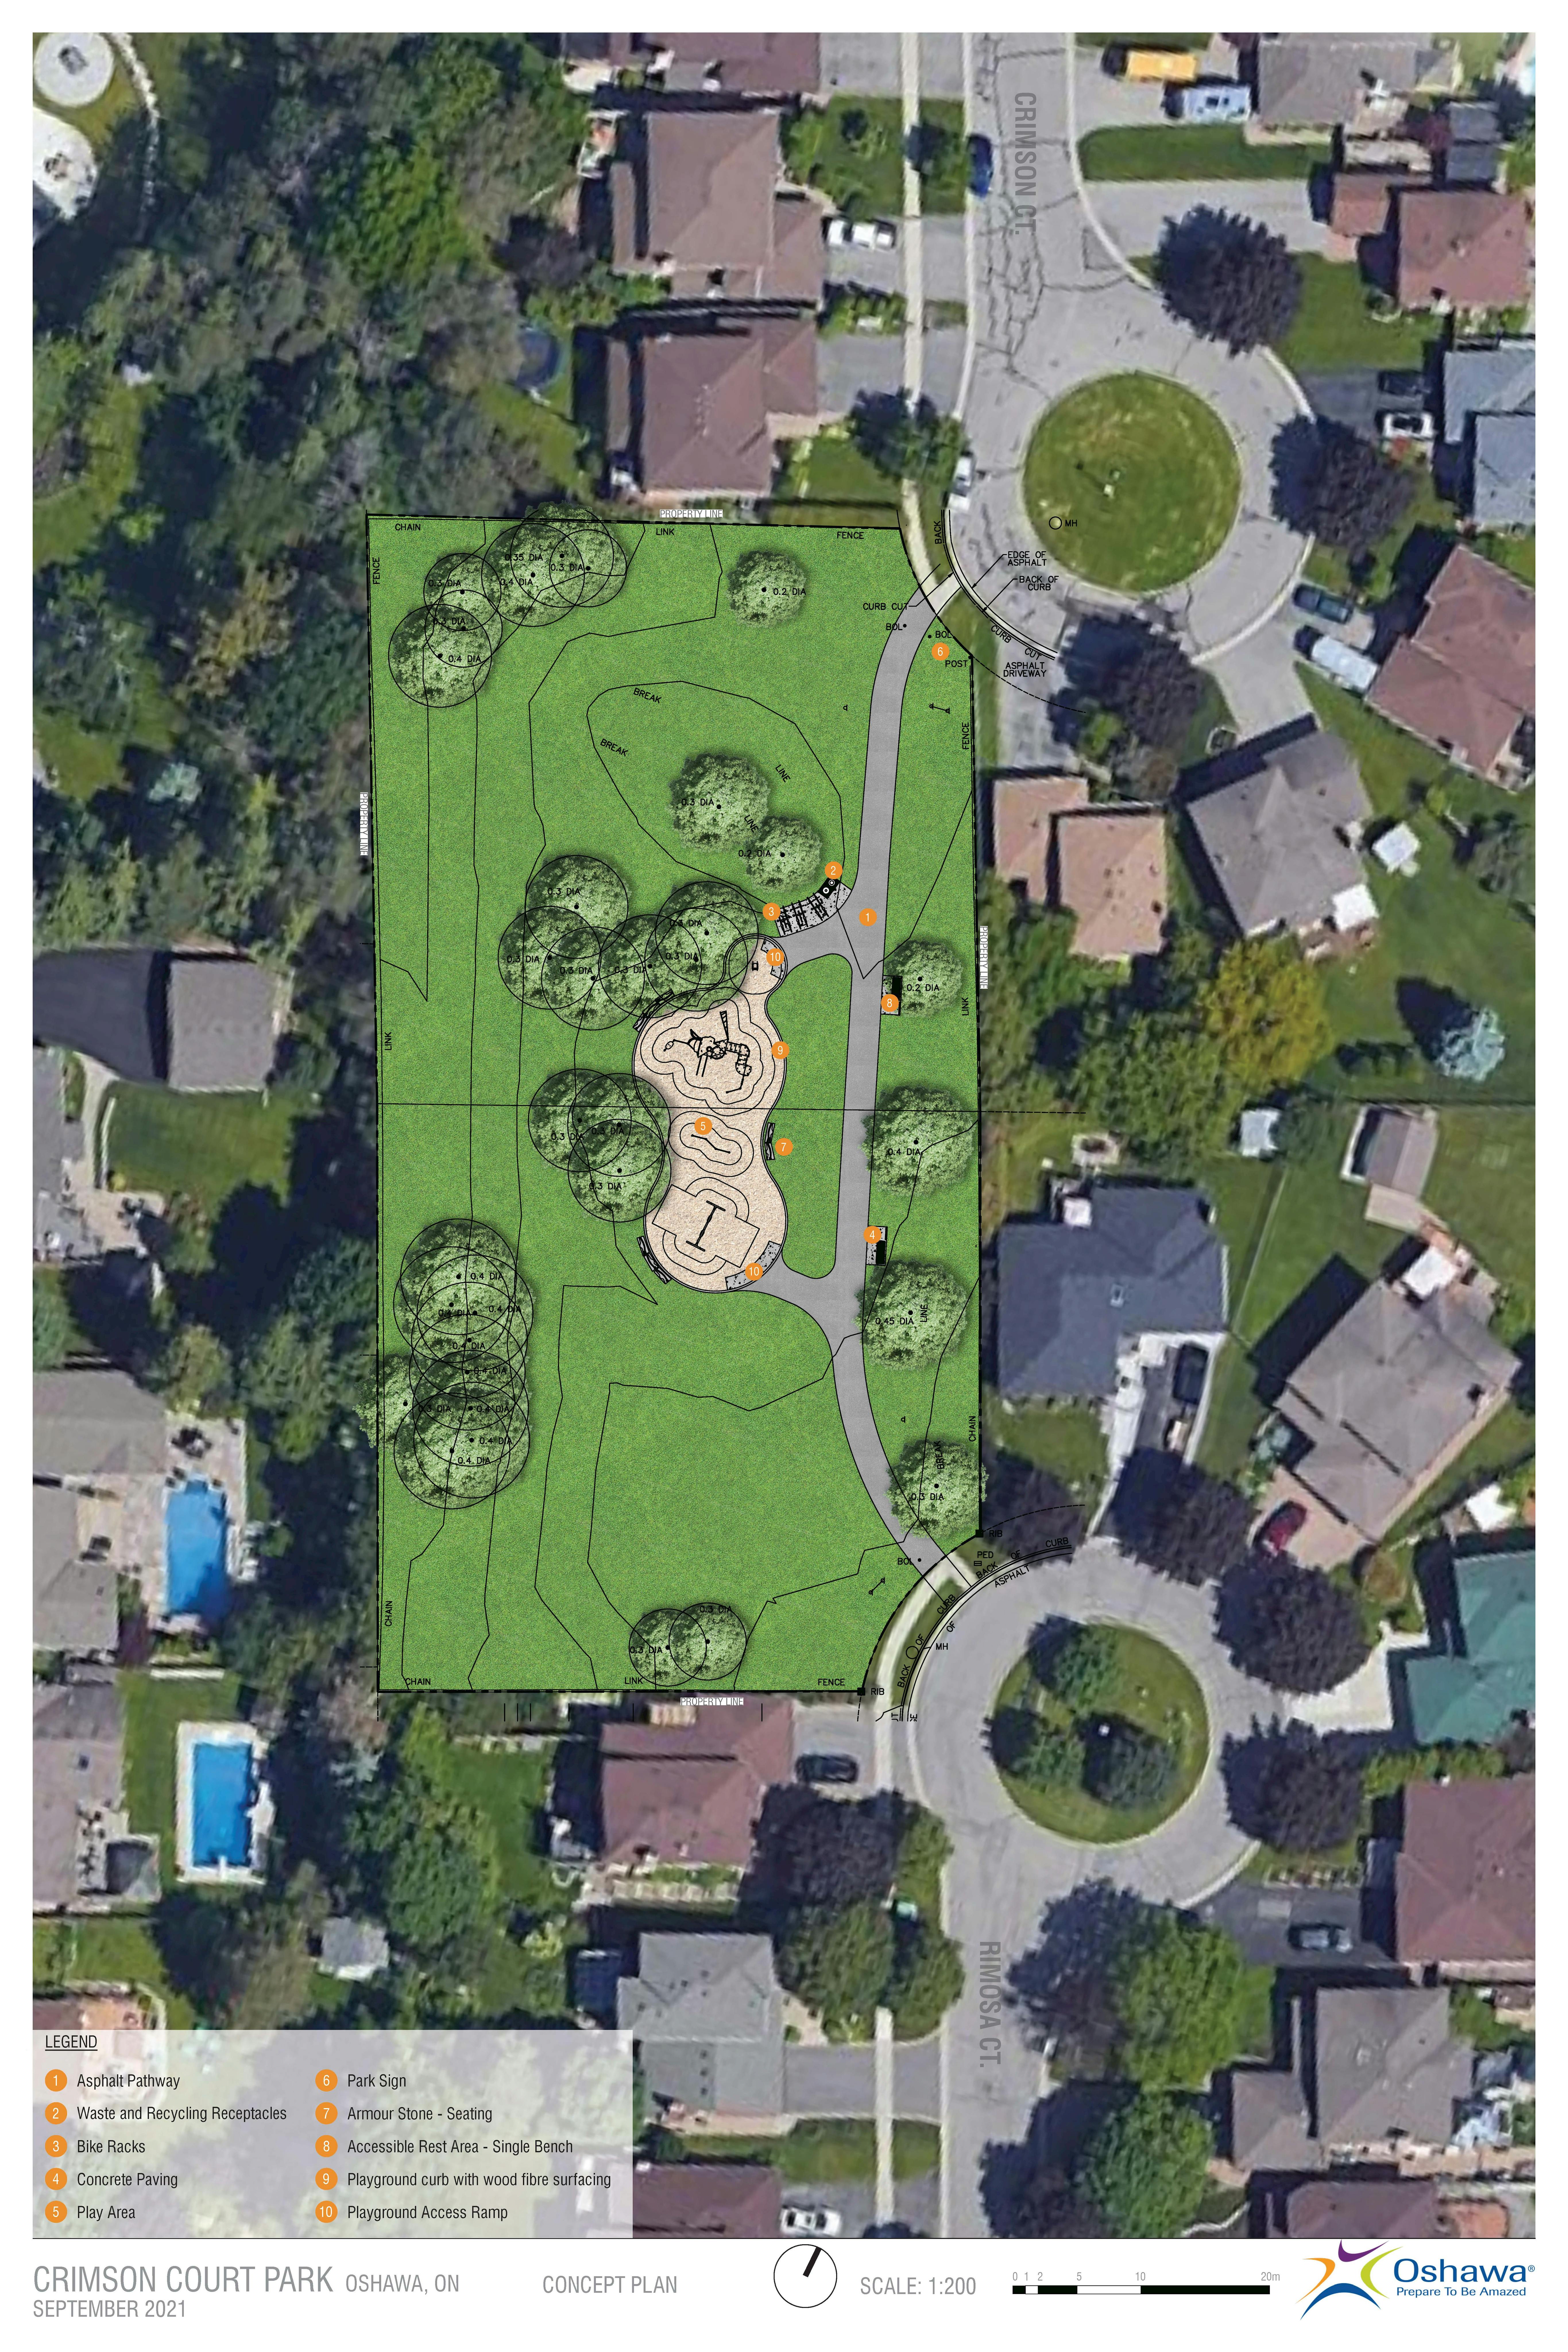 Crimson Court Park conceptual plan